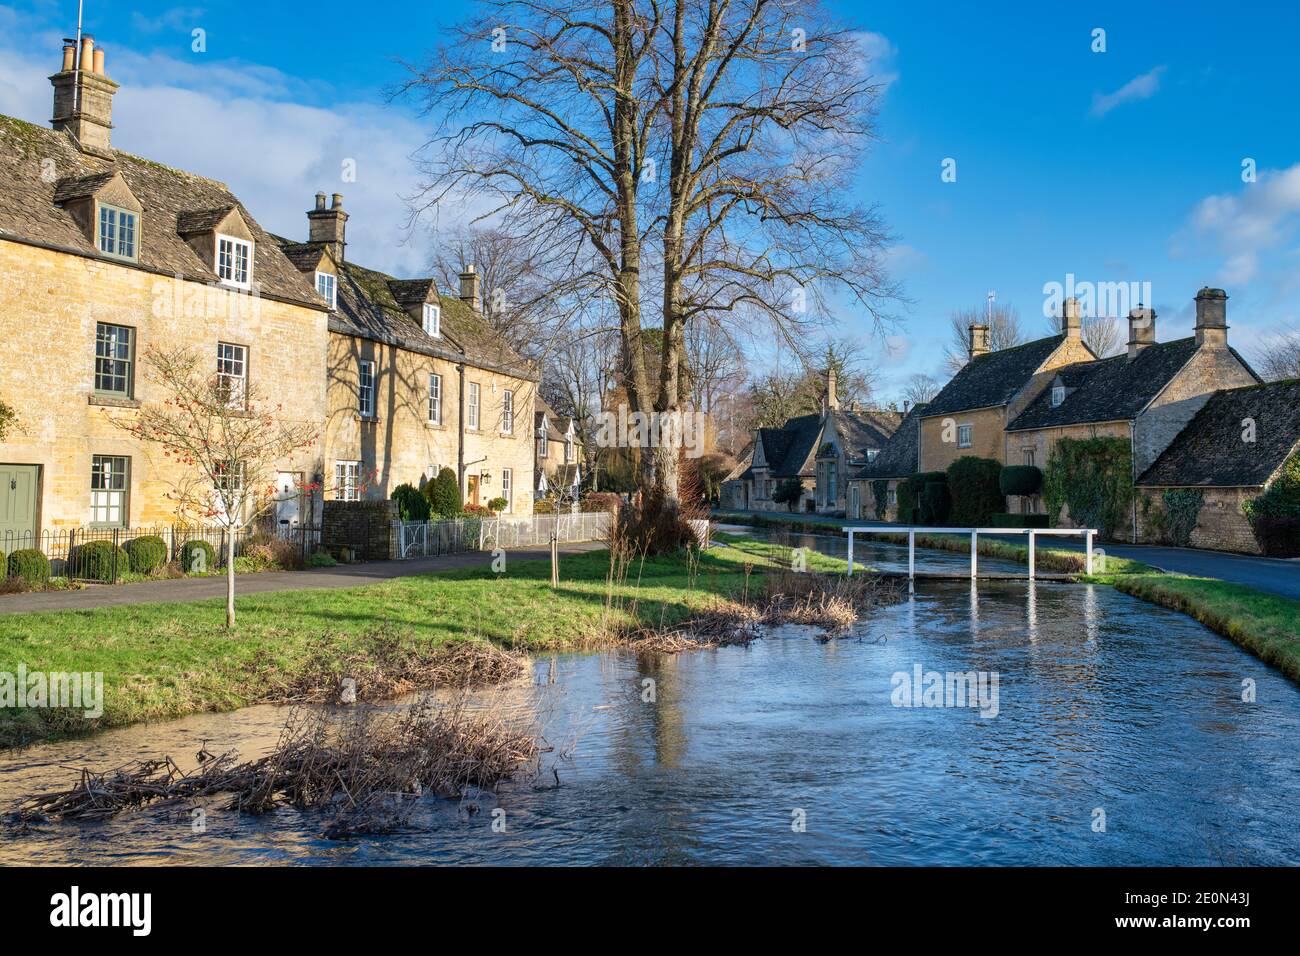 Fiume occhio alti livelli d'acqua nel villaggio di cotswold di macellazione inferiore la vigilia di Natale. Lower Slaughter, Cotswolds, Gloucestershire, Inghilterra Foto Stock